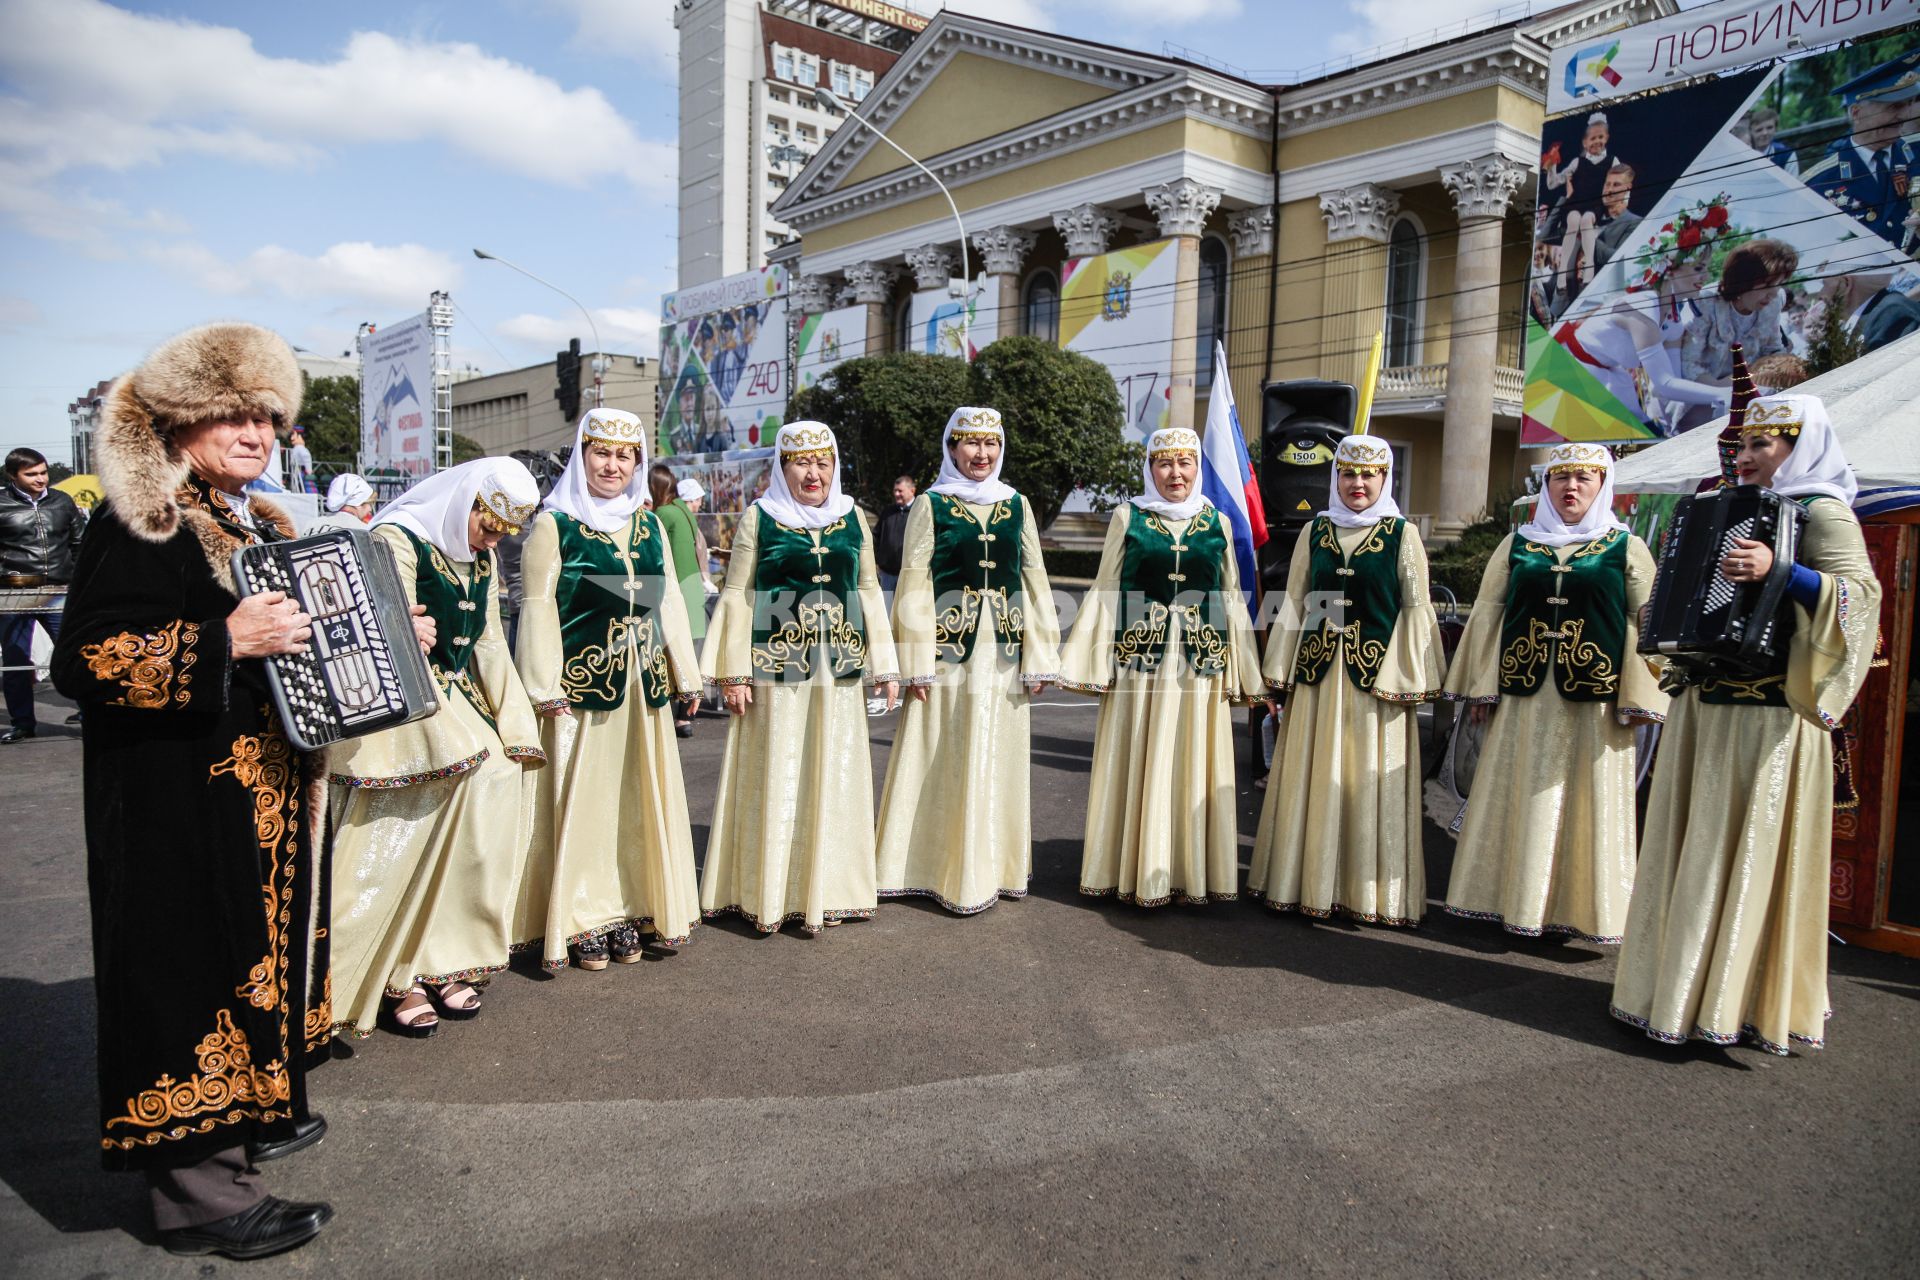 Ставрополь.    Выступление творческих коллективов  на Фестивале  баранины в рамках российско-азербайджанского международного форума.